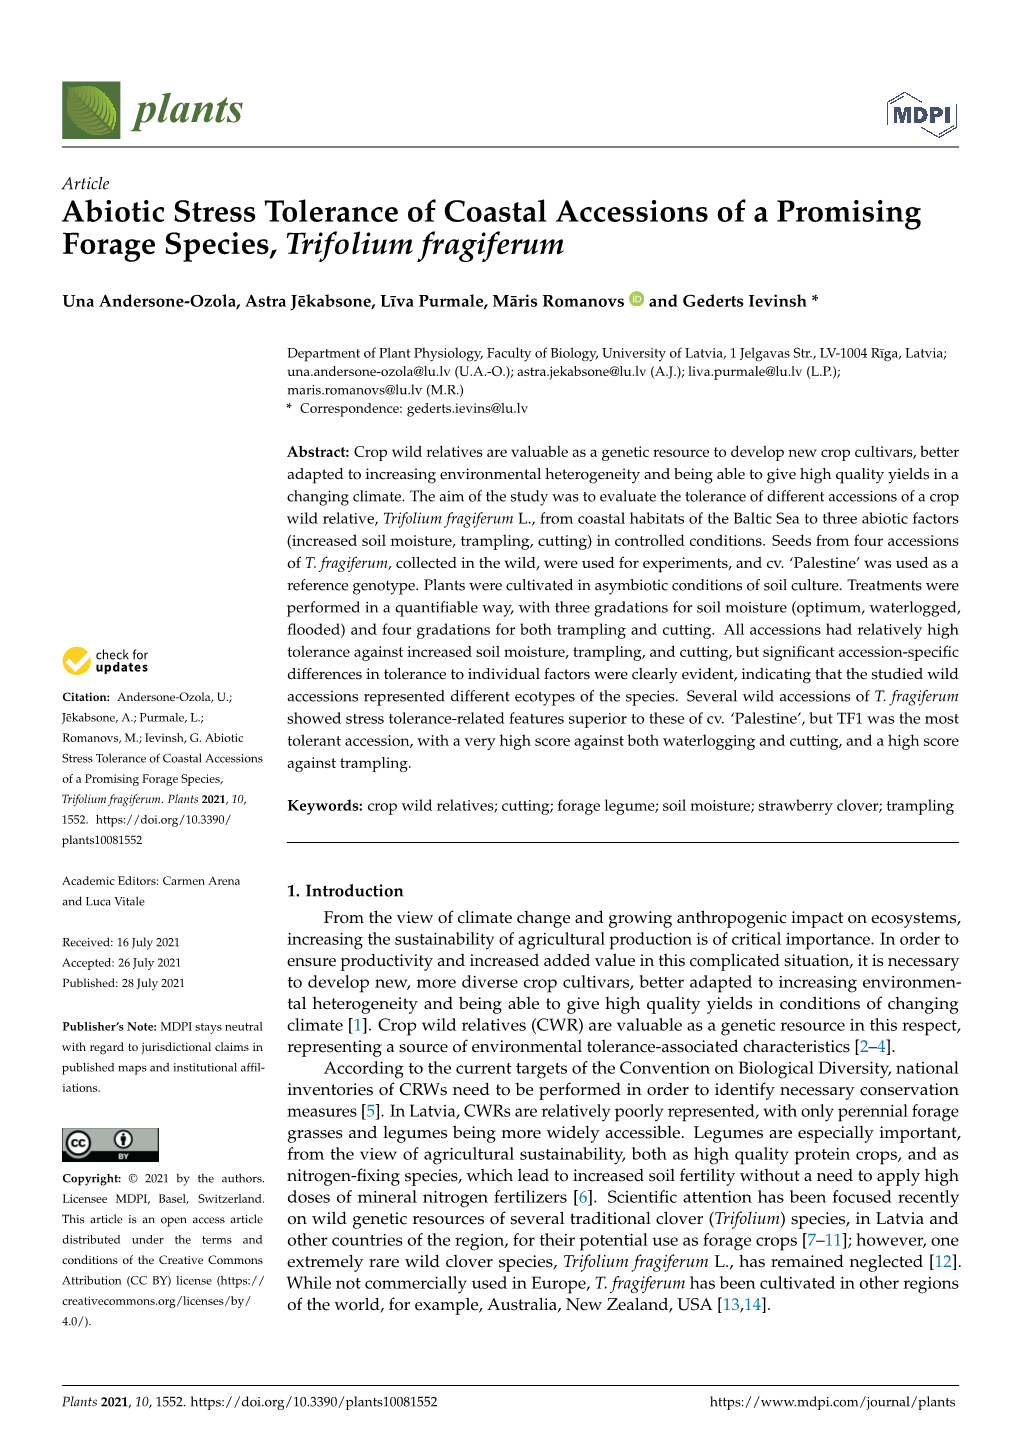 Article Abiotic Stress Tolerance of Coastal Accessions of a Promising Forage Species, Trifolium Fragiferum